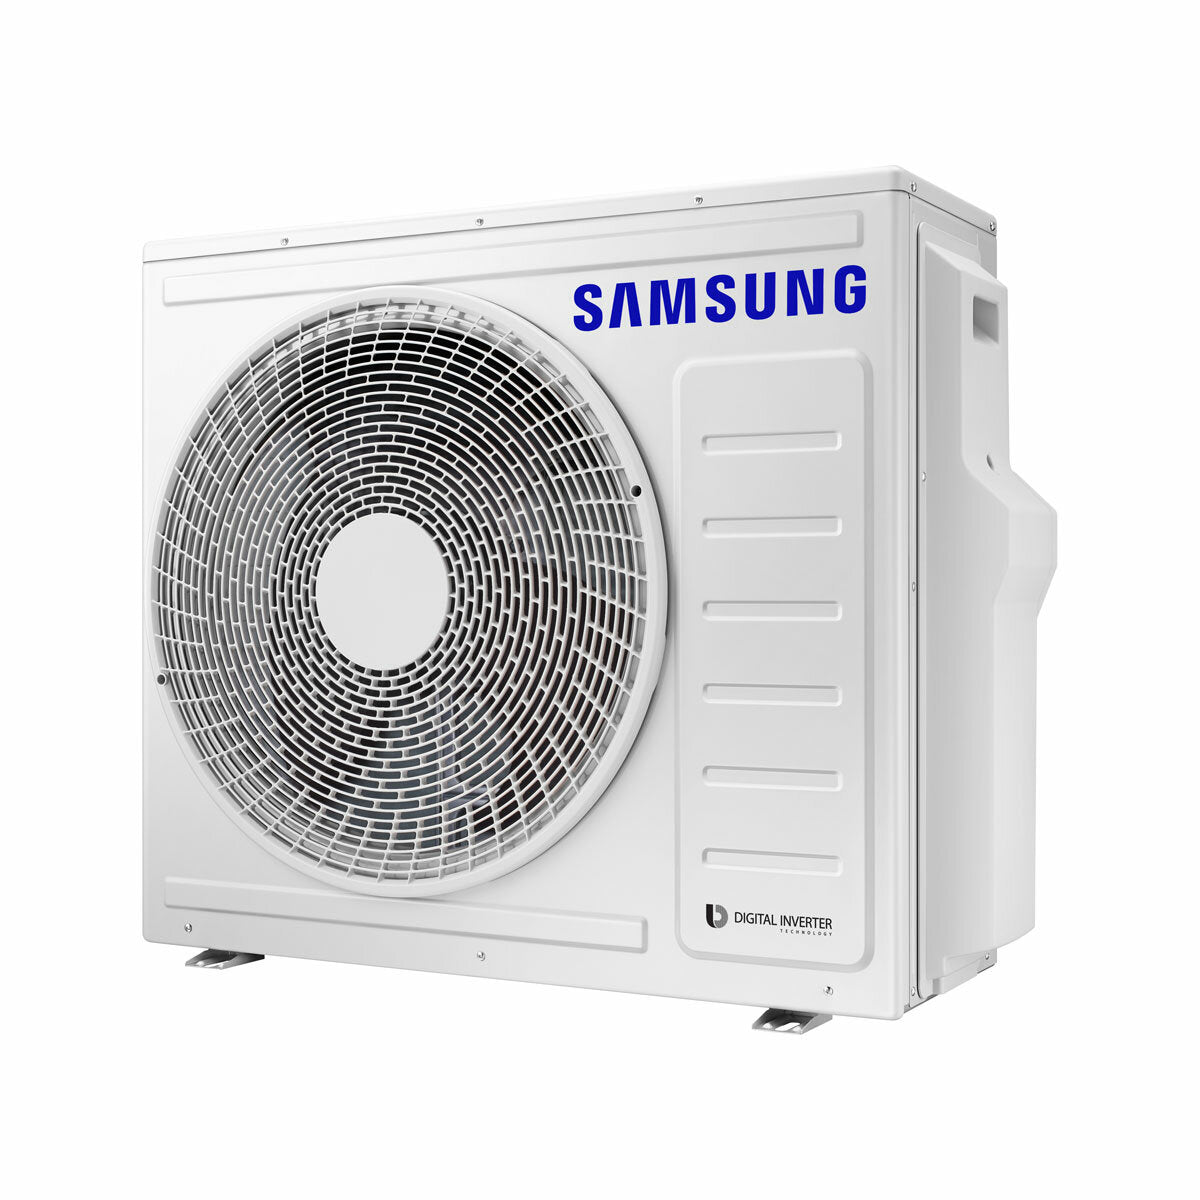 Samsung Cebu Wi-Fi Trial Split Klimaanlage 7000 + 7000 + 18000 BTU Wechselrichter A++ WLAN Außengerät 8,0 kW